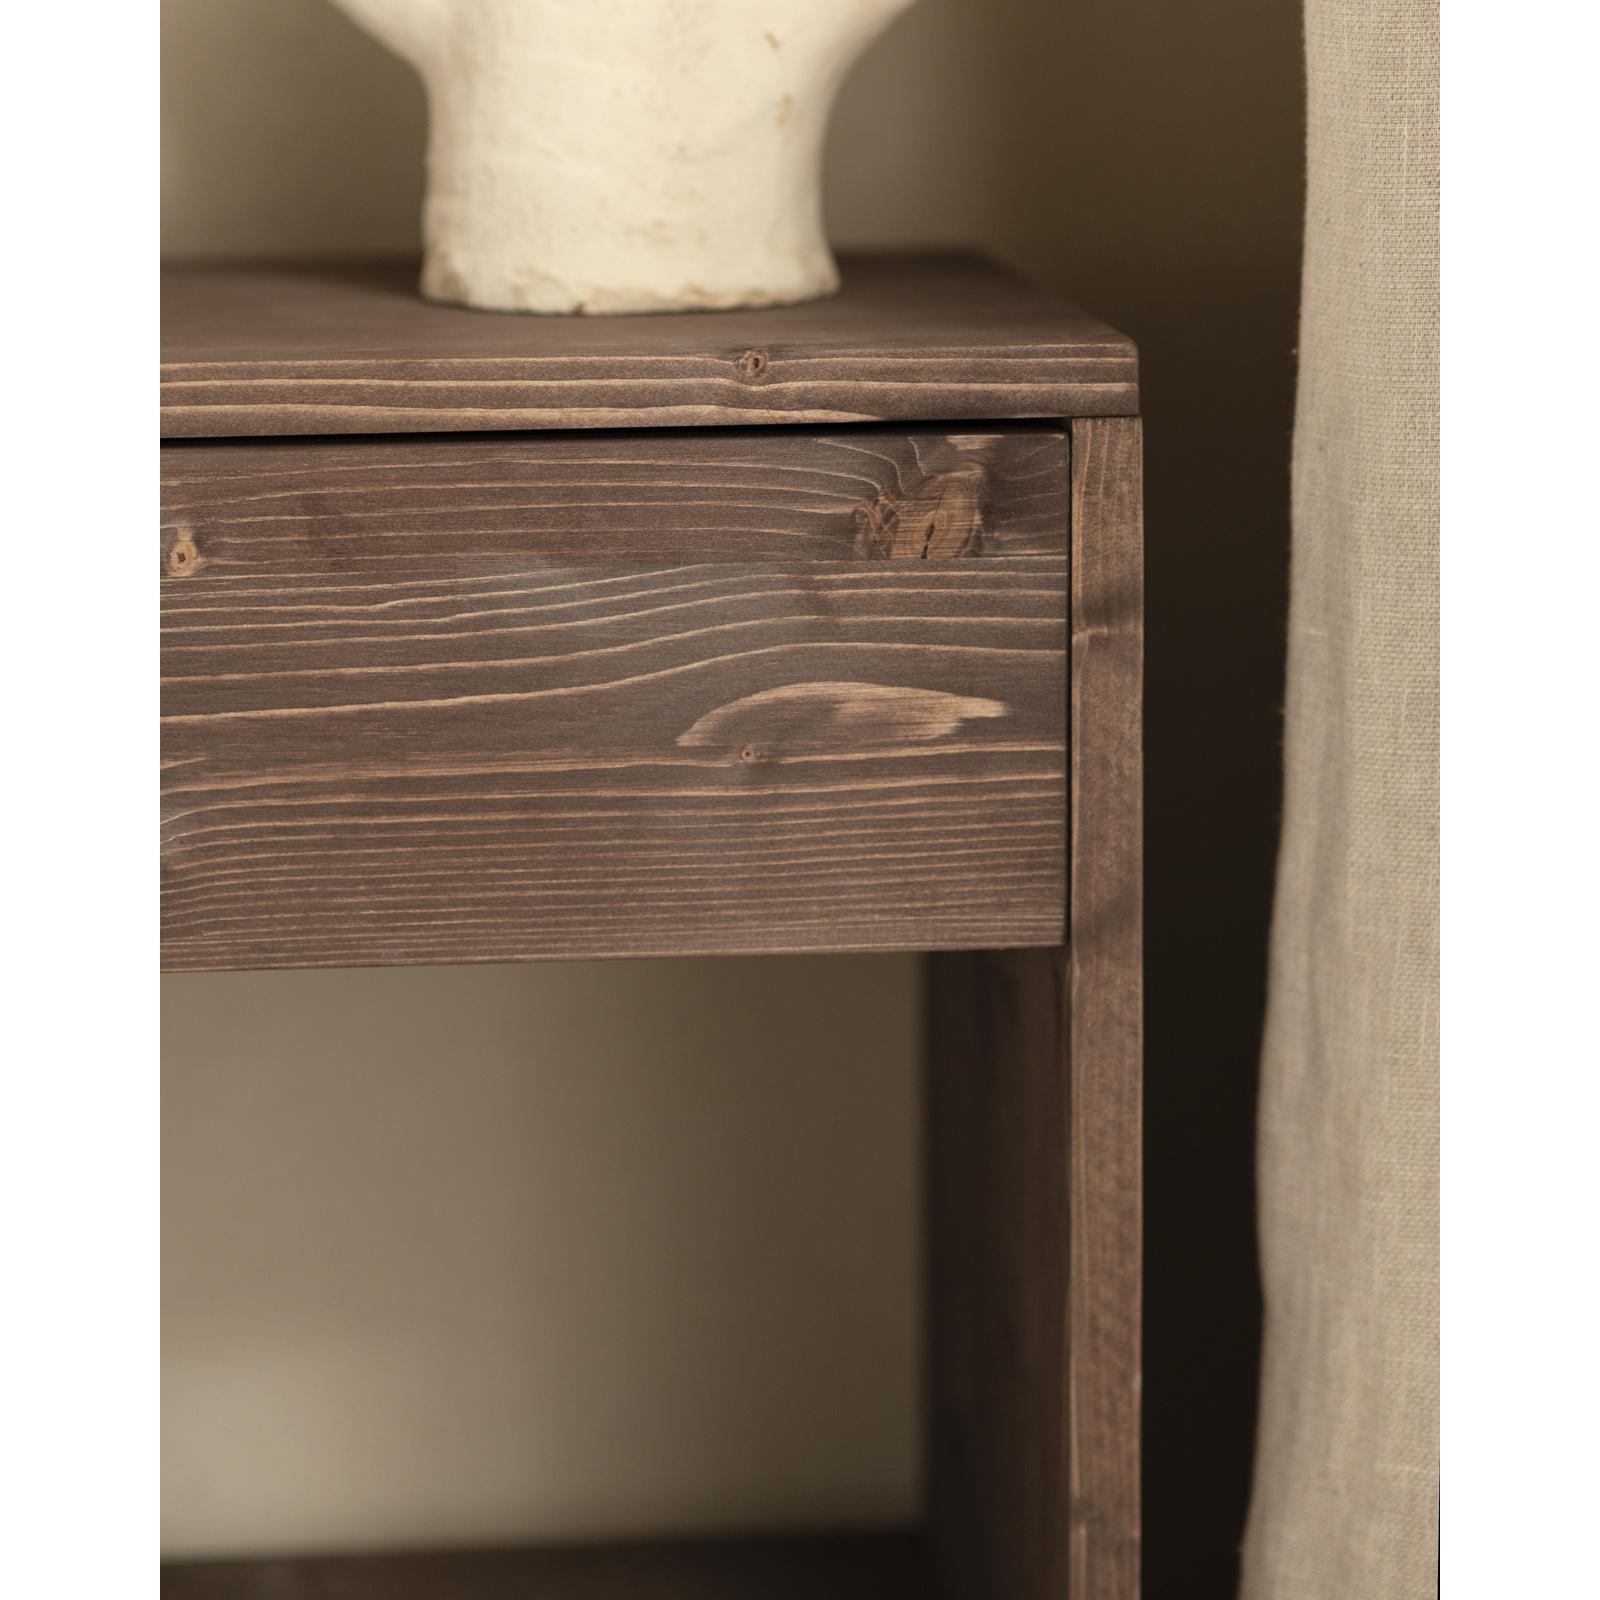 Table de chevet en bois massif avec un tiroir couleur noyer 50x40cm Hauteur: 50 Longueur: 40 Largeur: 29.5